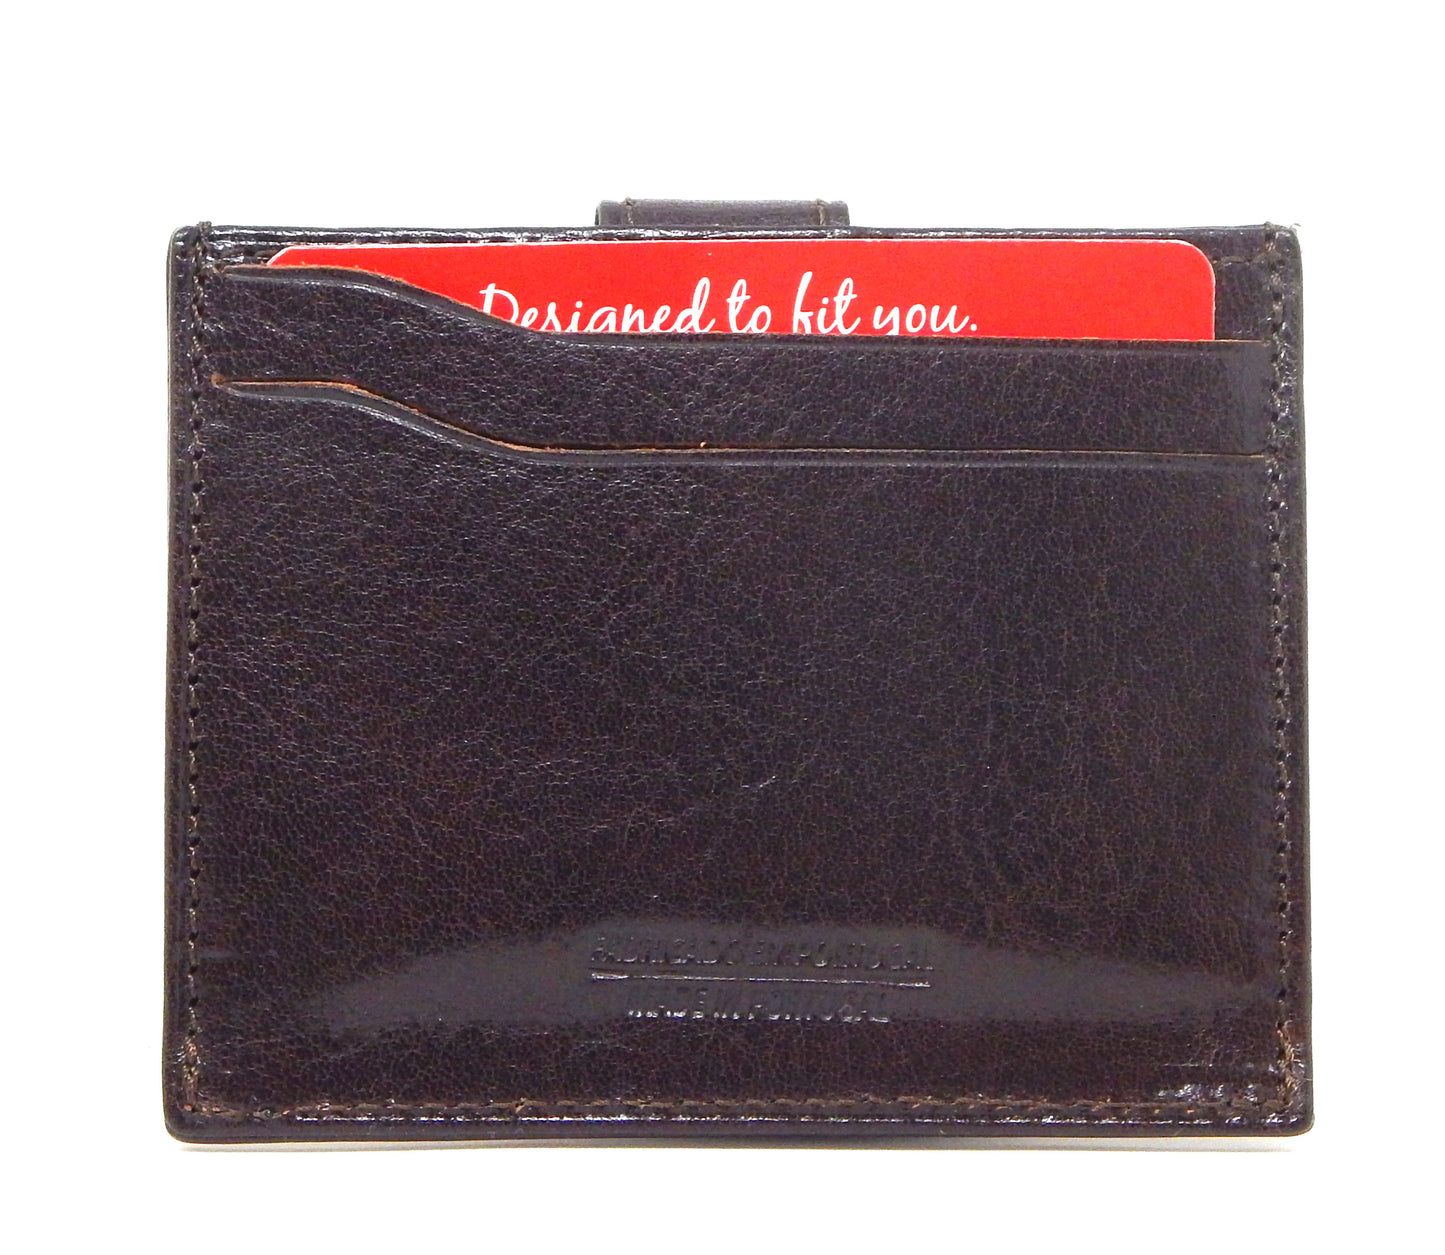 Cavalinho Leather Card Holder Wallet - Brown - 28610576.02.99_2